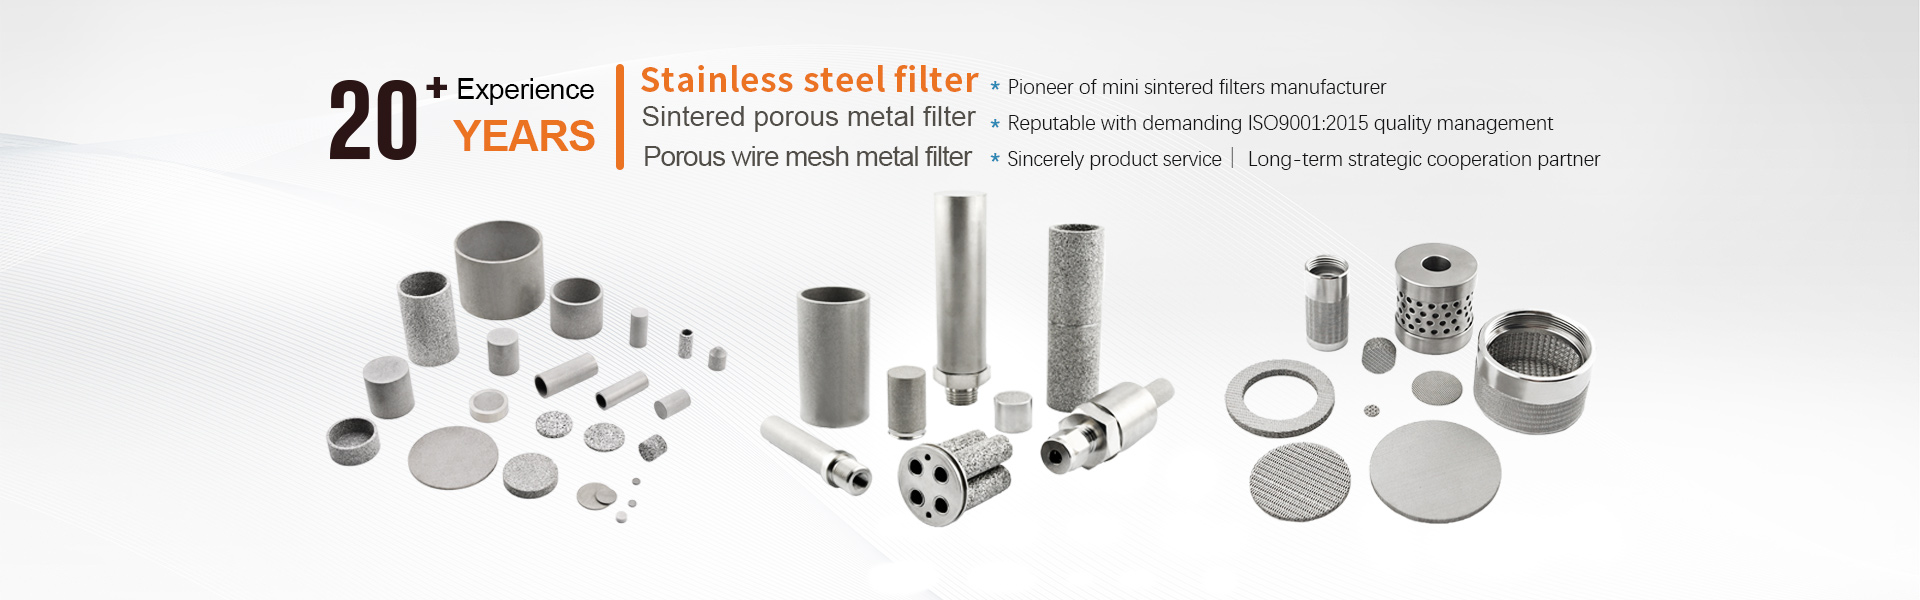 hengko stainless steel filter